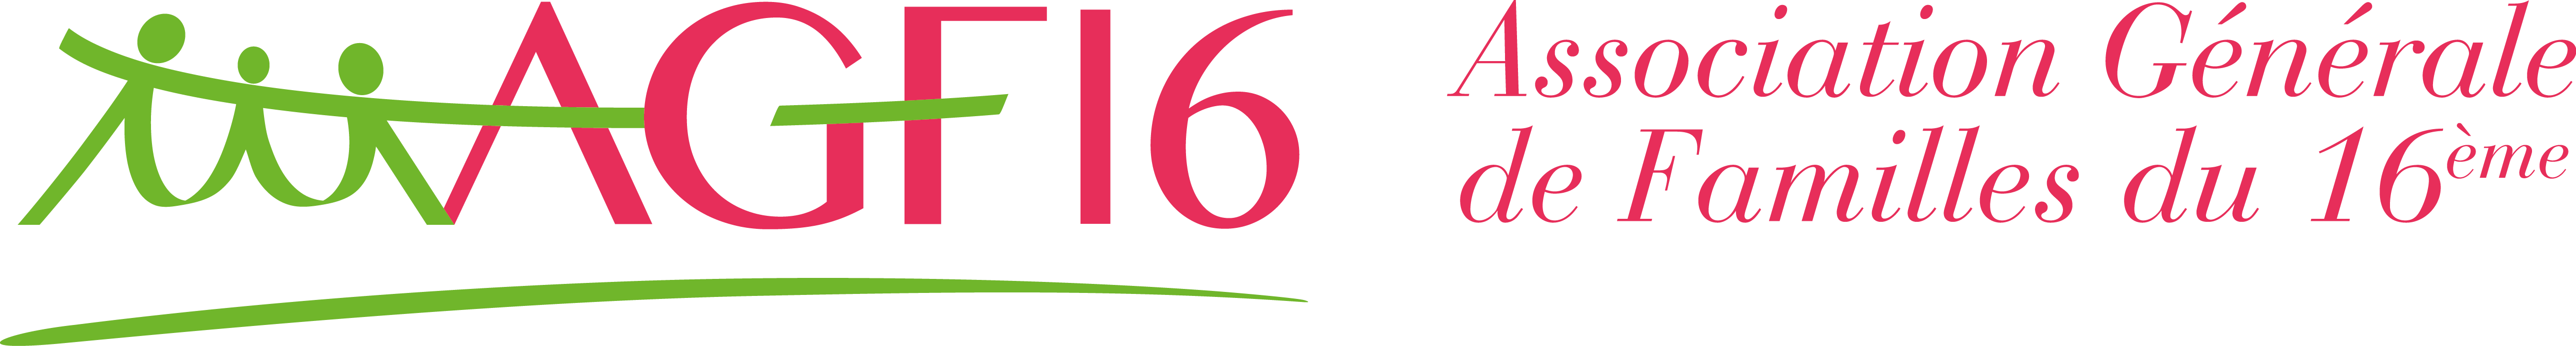 AGF16 – Association Générale de Familles du 16e Arrondissement